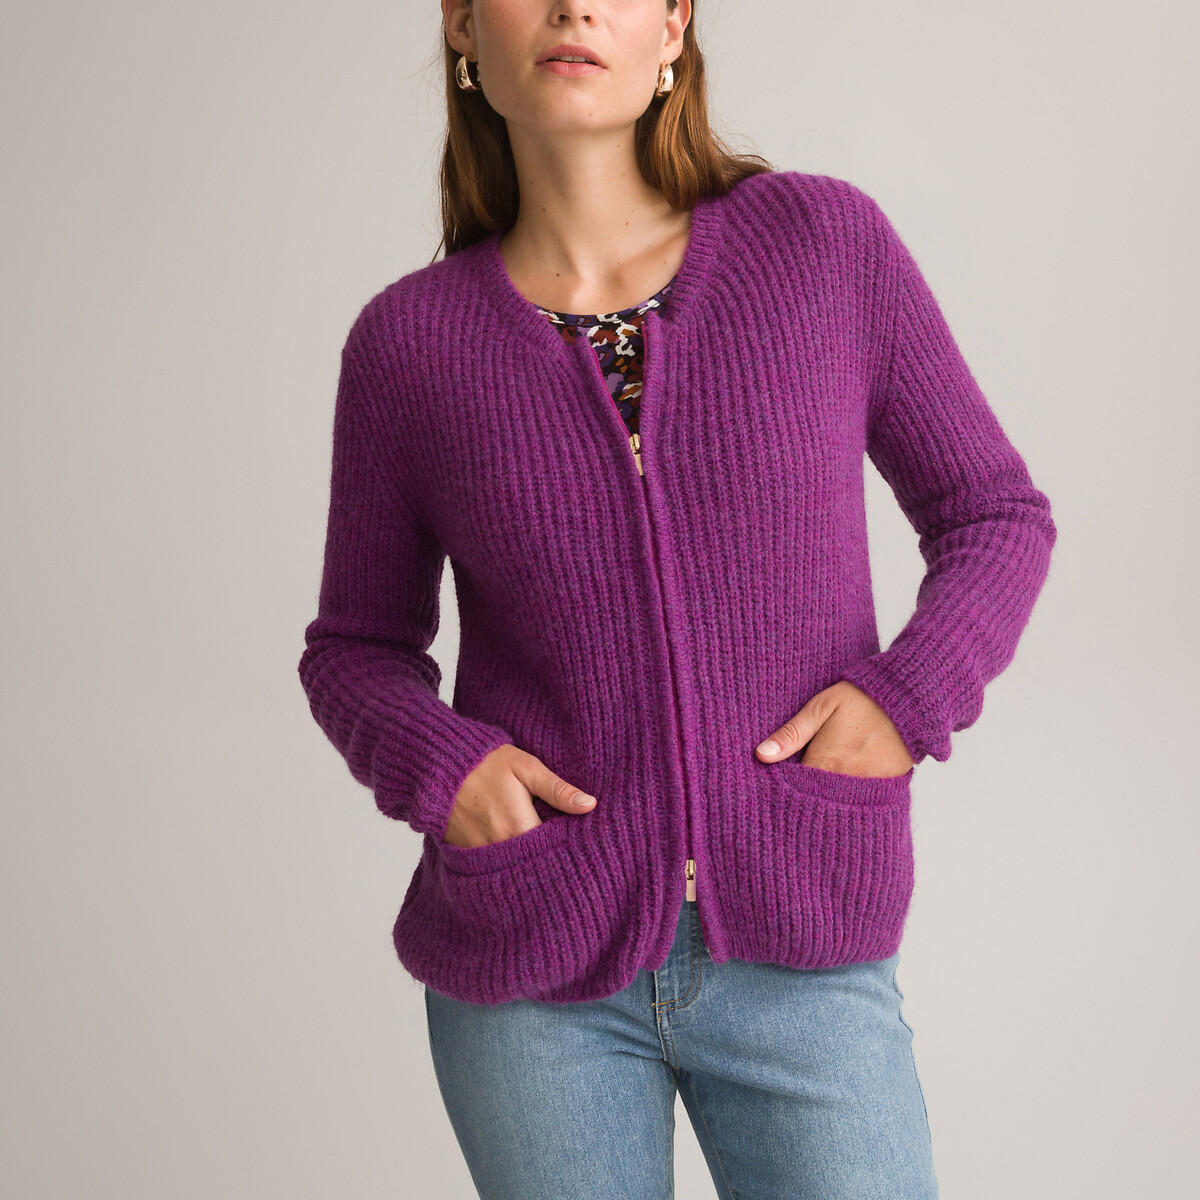 Two-way zip cardigan in chunky knit, dark purple, Anne Weyburn | La Redoute